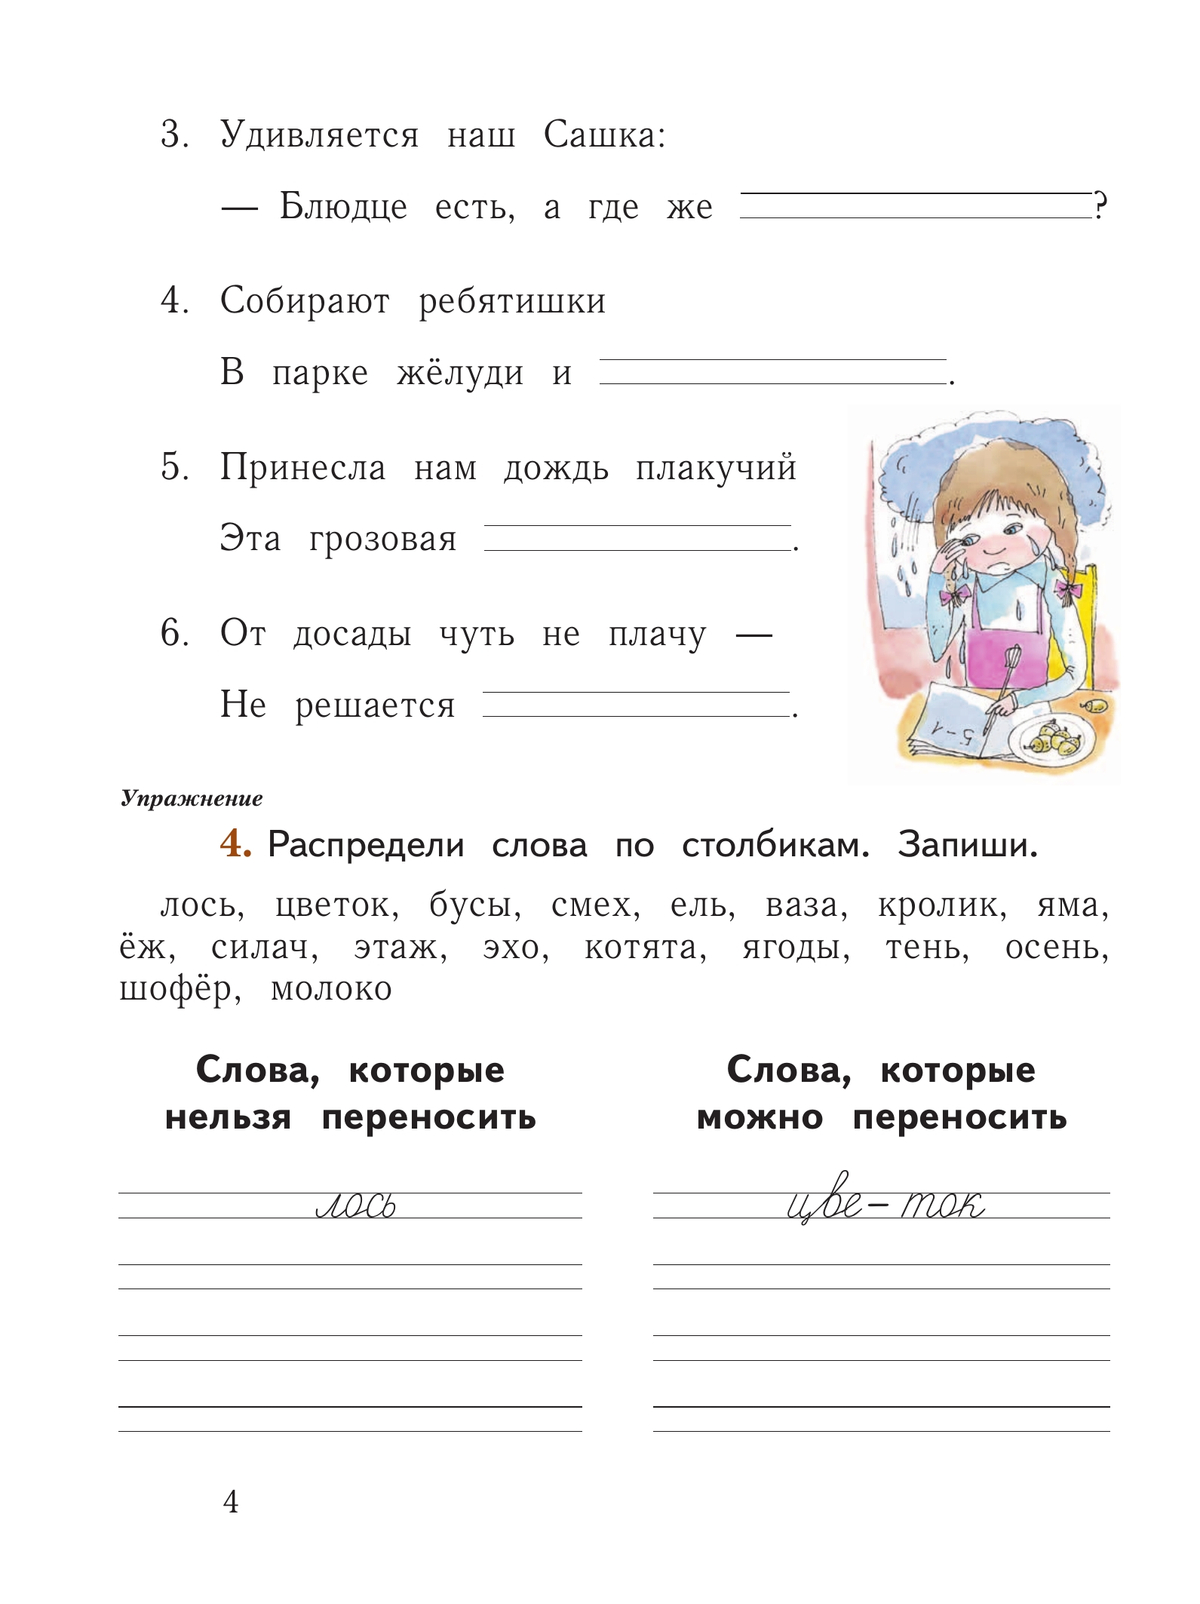 Русский язык. 1 класс. Рабочая тетрадь. В 2 частях. Часть 2 11